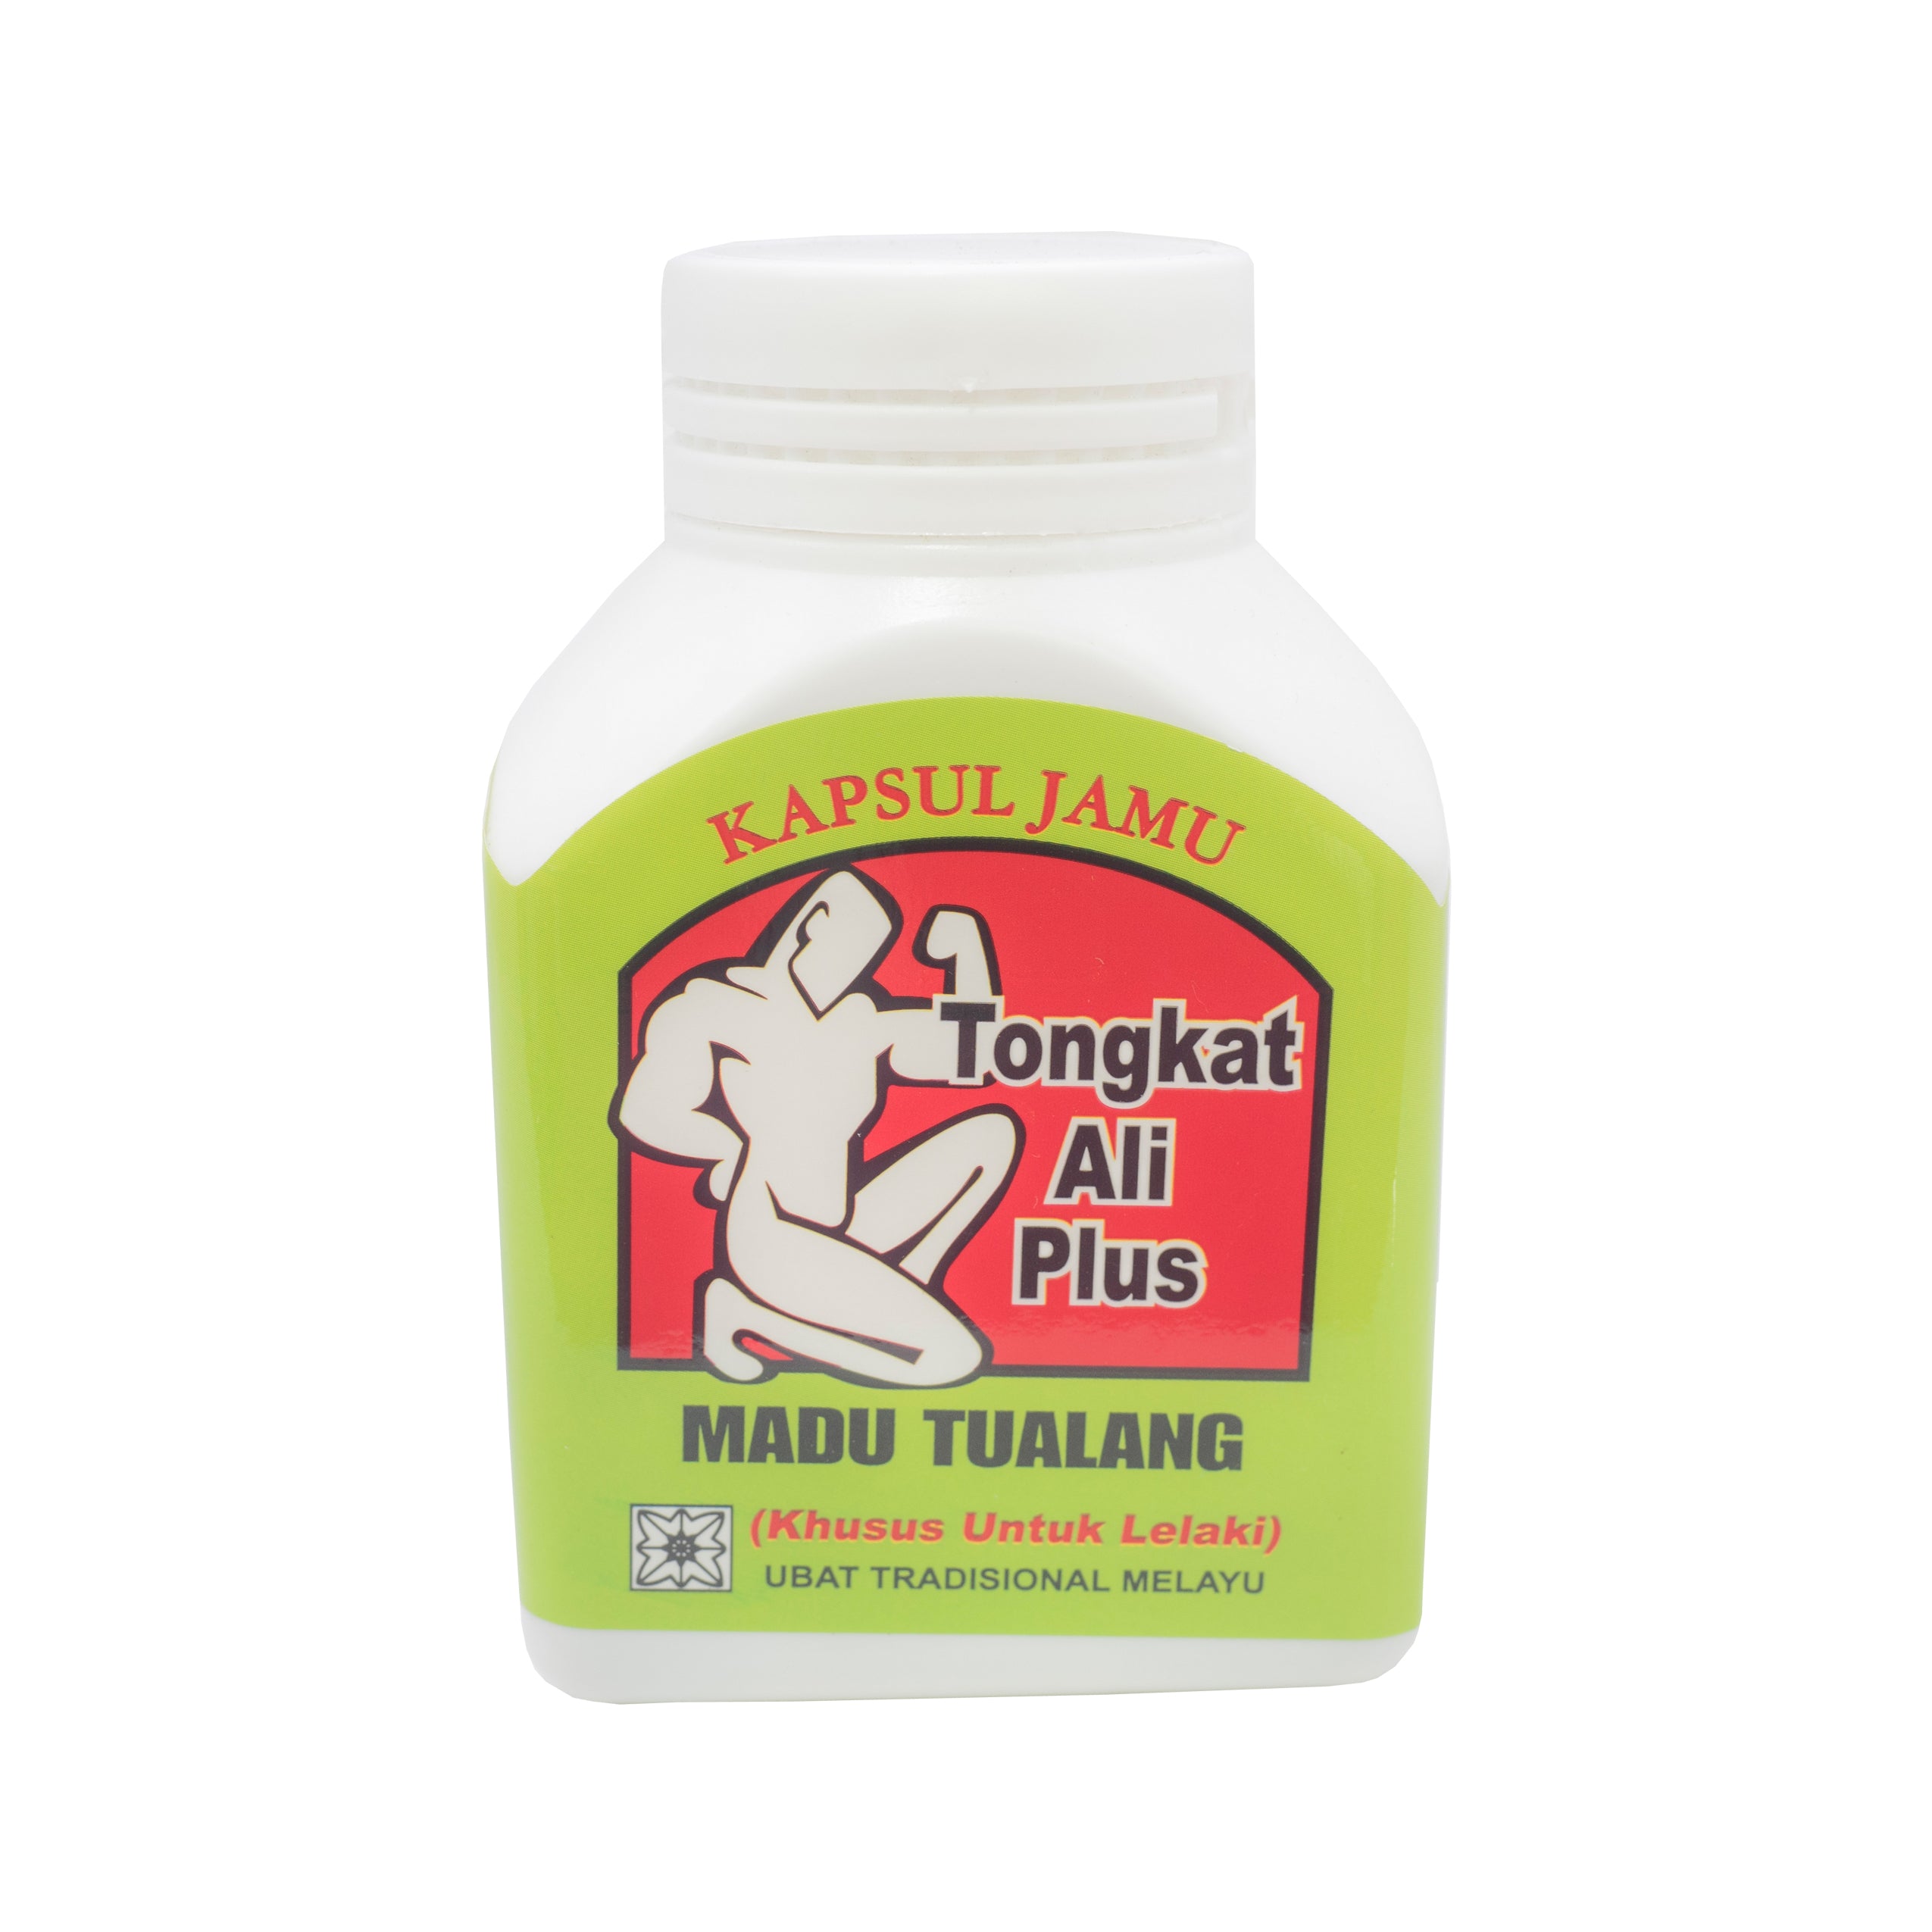 Mustika Ayu, Tongkat Ali, Plus Madu Tualang, 60 capsules